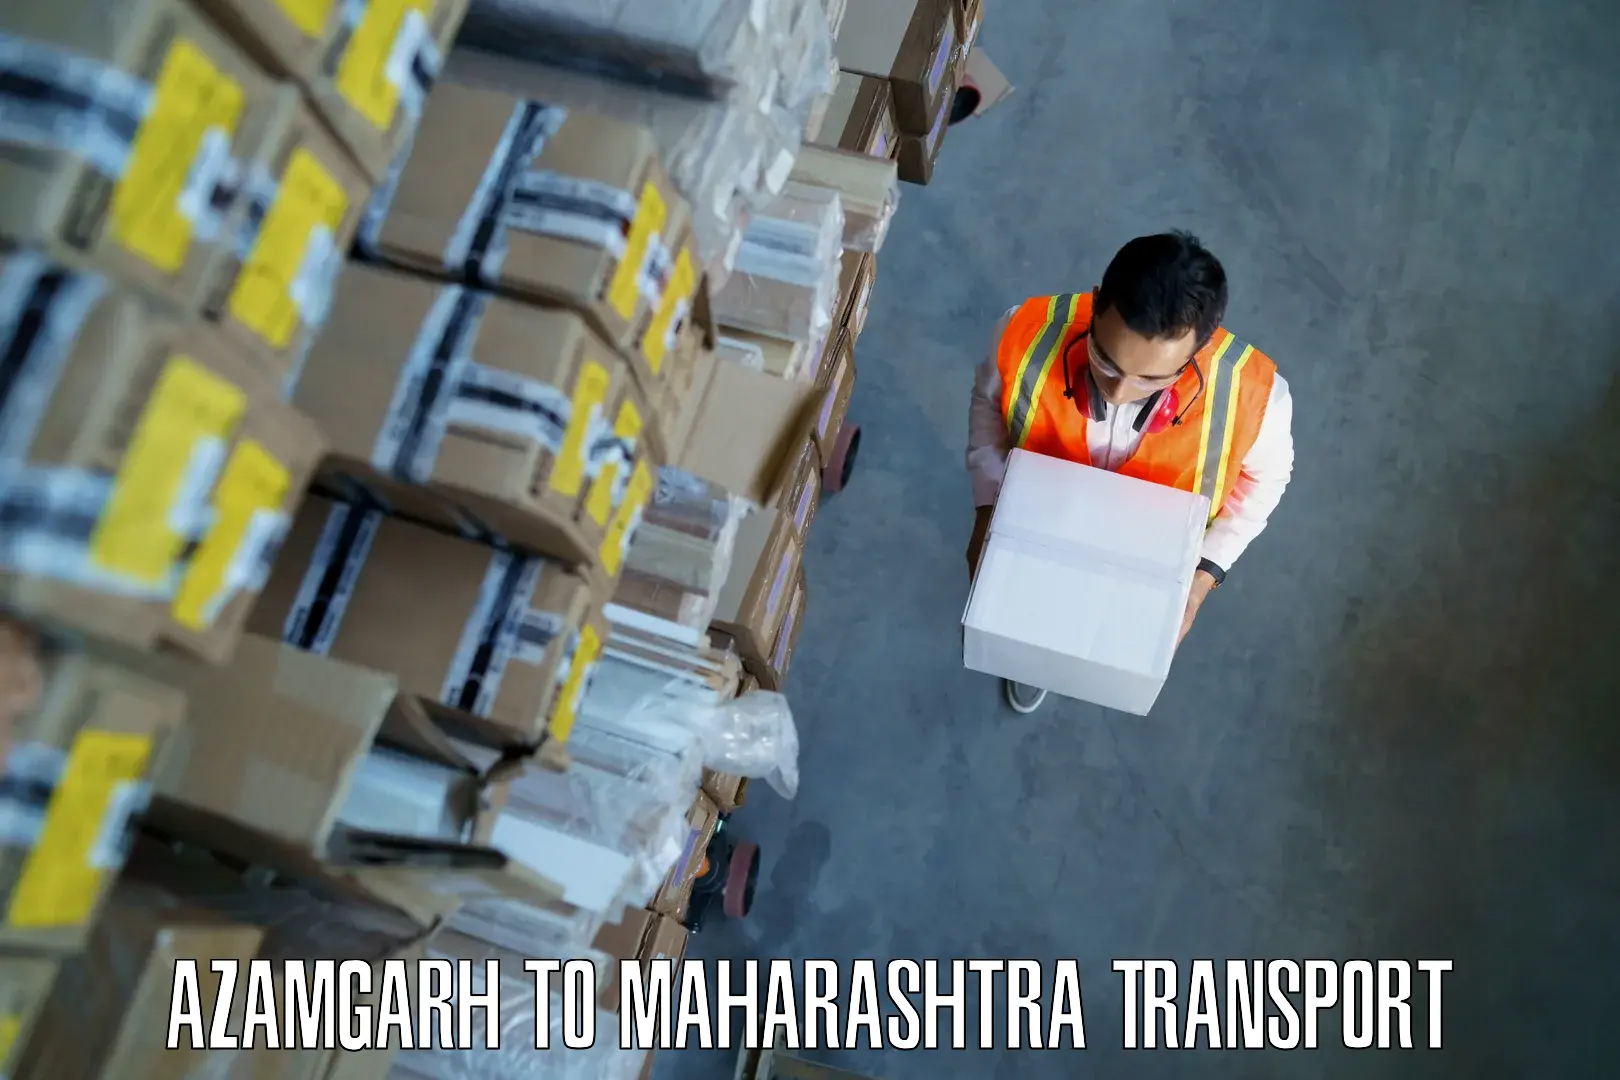 Nearby transport service Azamgarh to Maharashtra